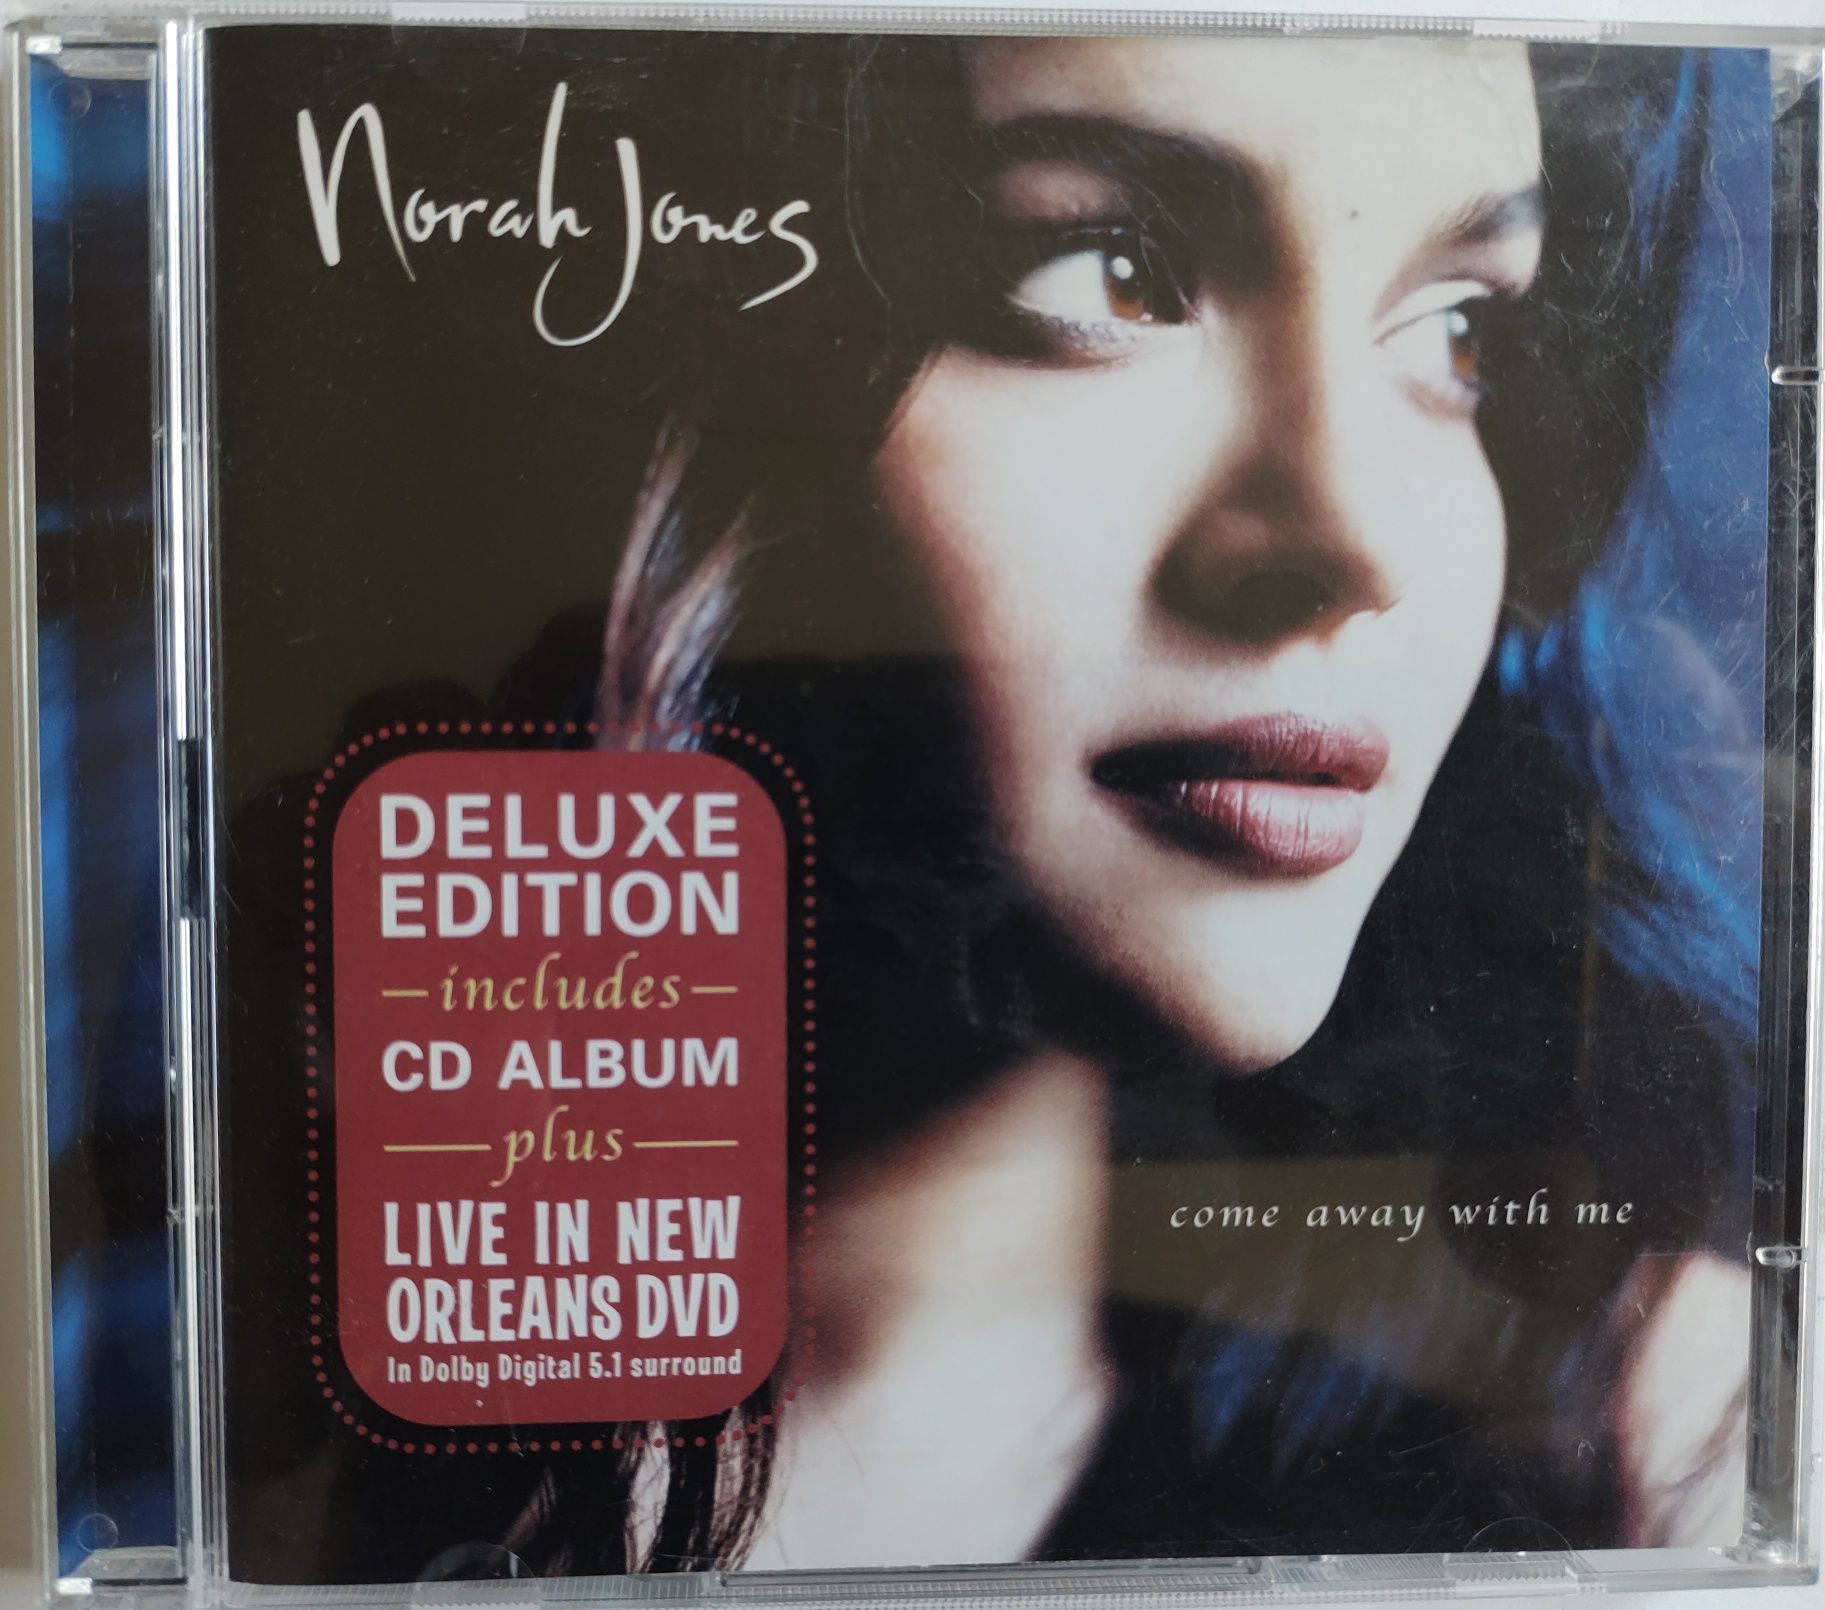 Norah Jones Deluxe edition CD plus DVD